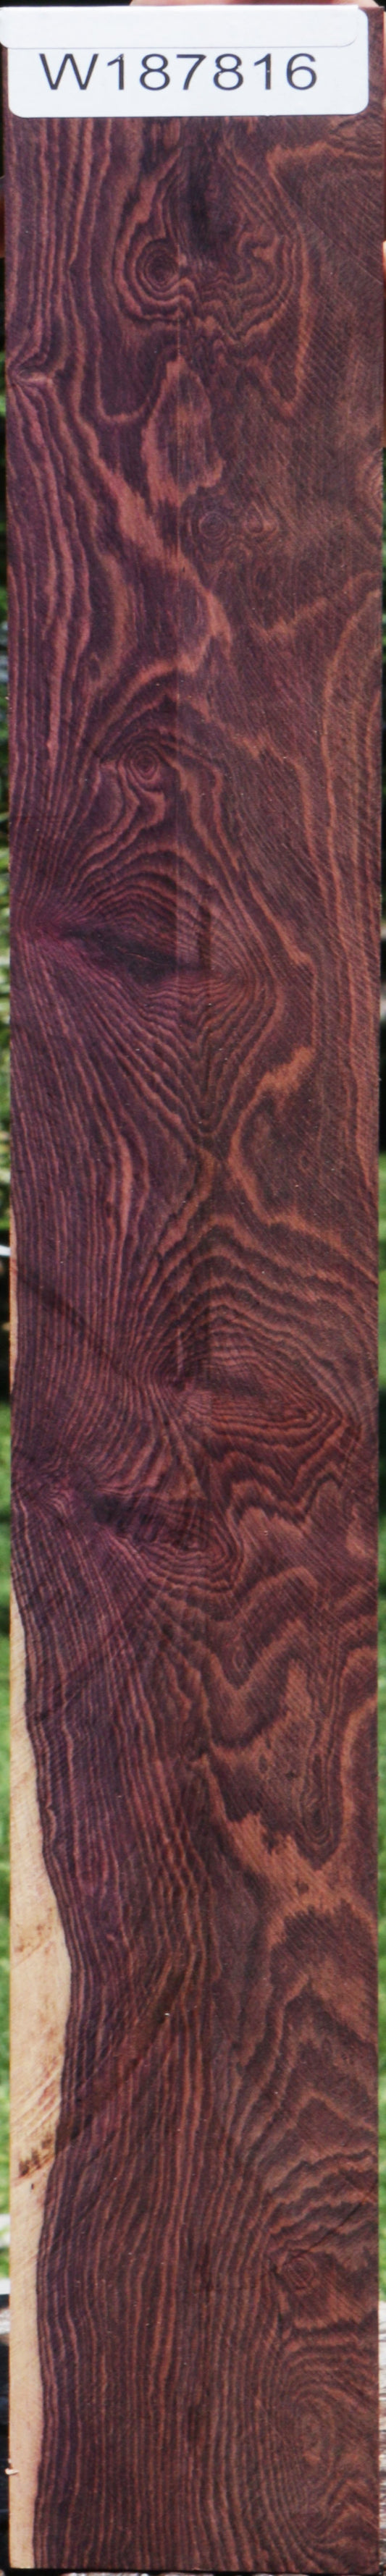 Camatillo Micro Lumber